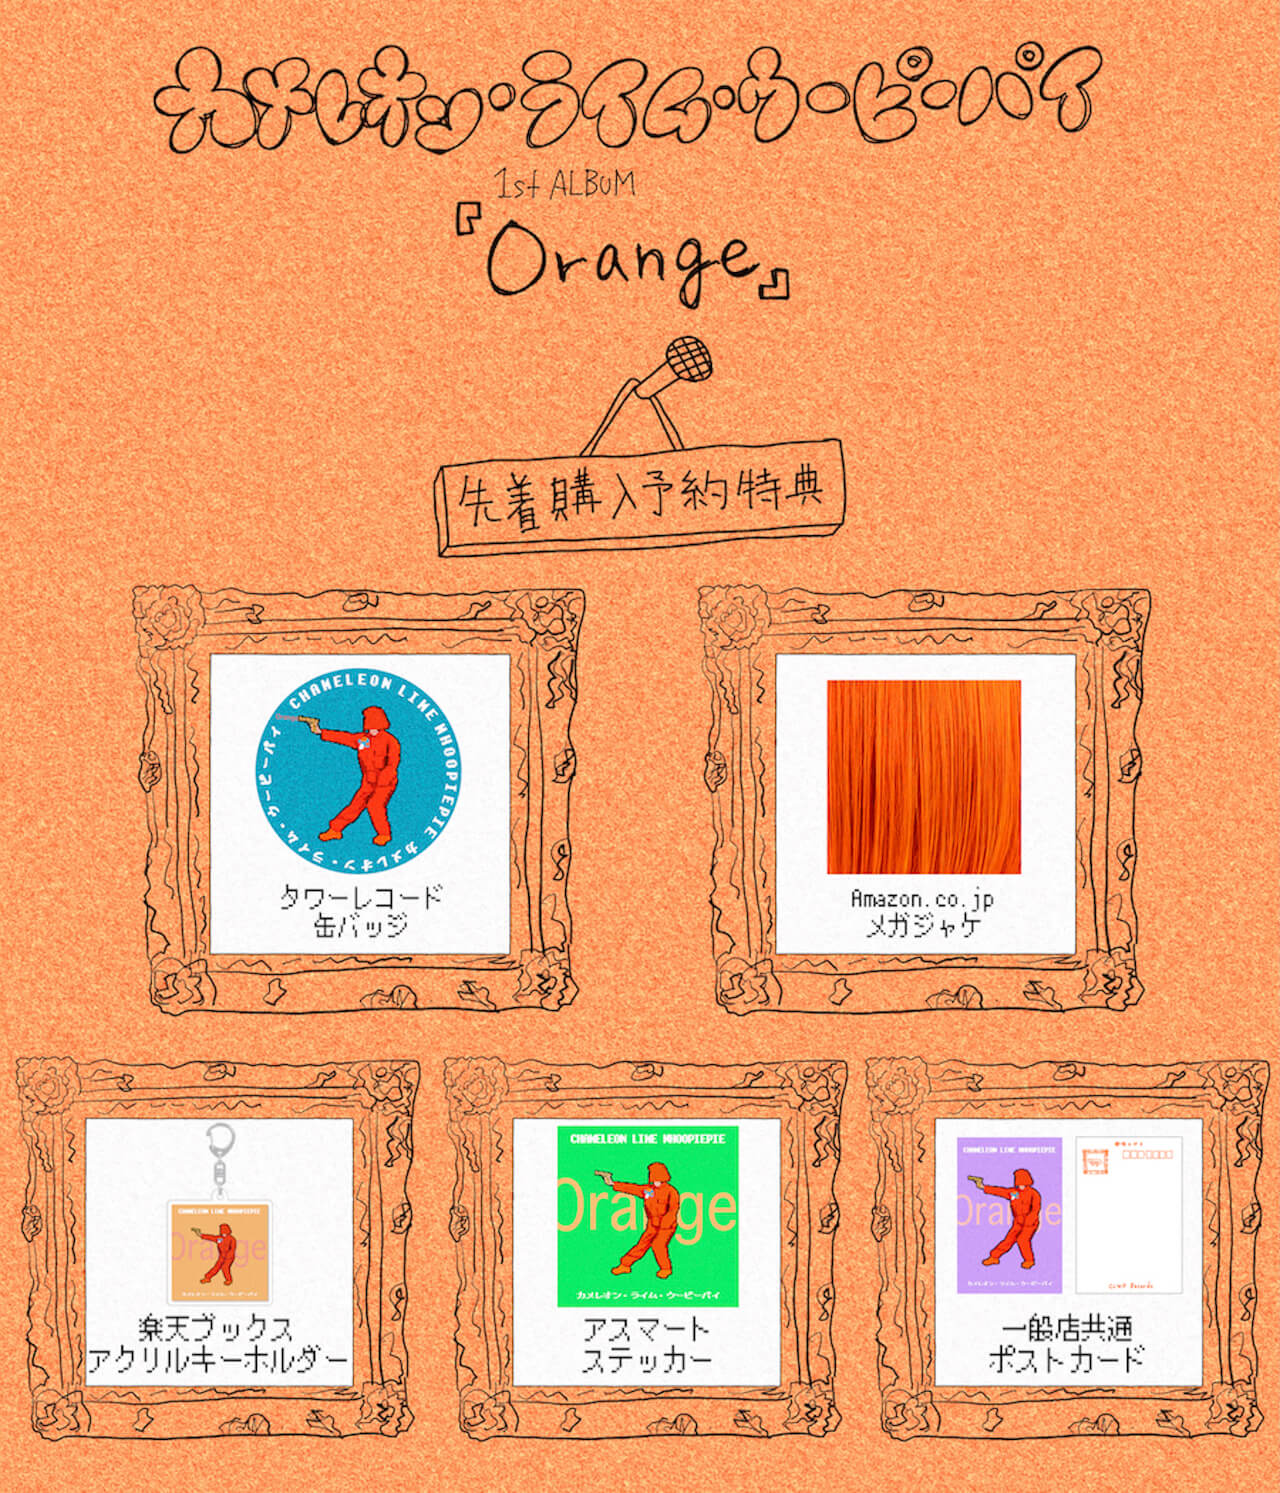 カメレオン・ライム・ウーピーパイ、1stフルアルバム『Orange』を5月にリリース｜初のワンマンライヴを東京・大阪にて開催 music0304-clwp-4-1